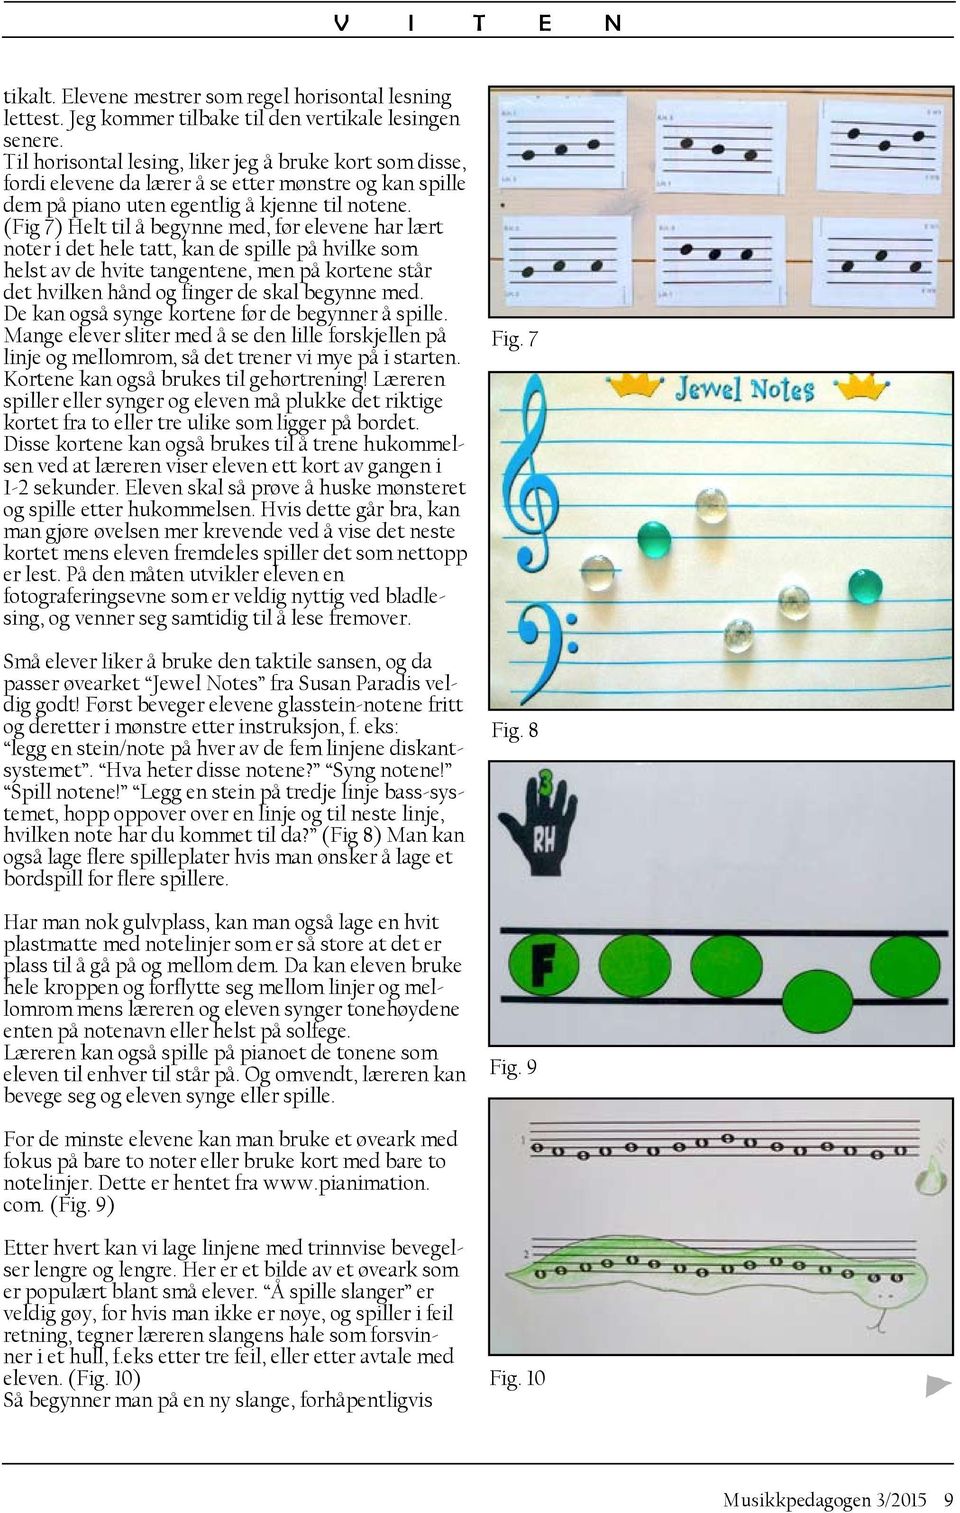 (Fig 7) Helt til å begynne med, før elevene har lært noter i det hele tatt, kan de spille på hvilke som helst av de hvite tangentene, men på kortene står det hvilken hånd og finger de skal begynne